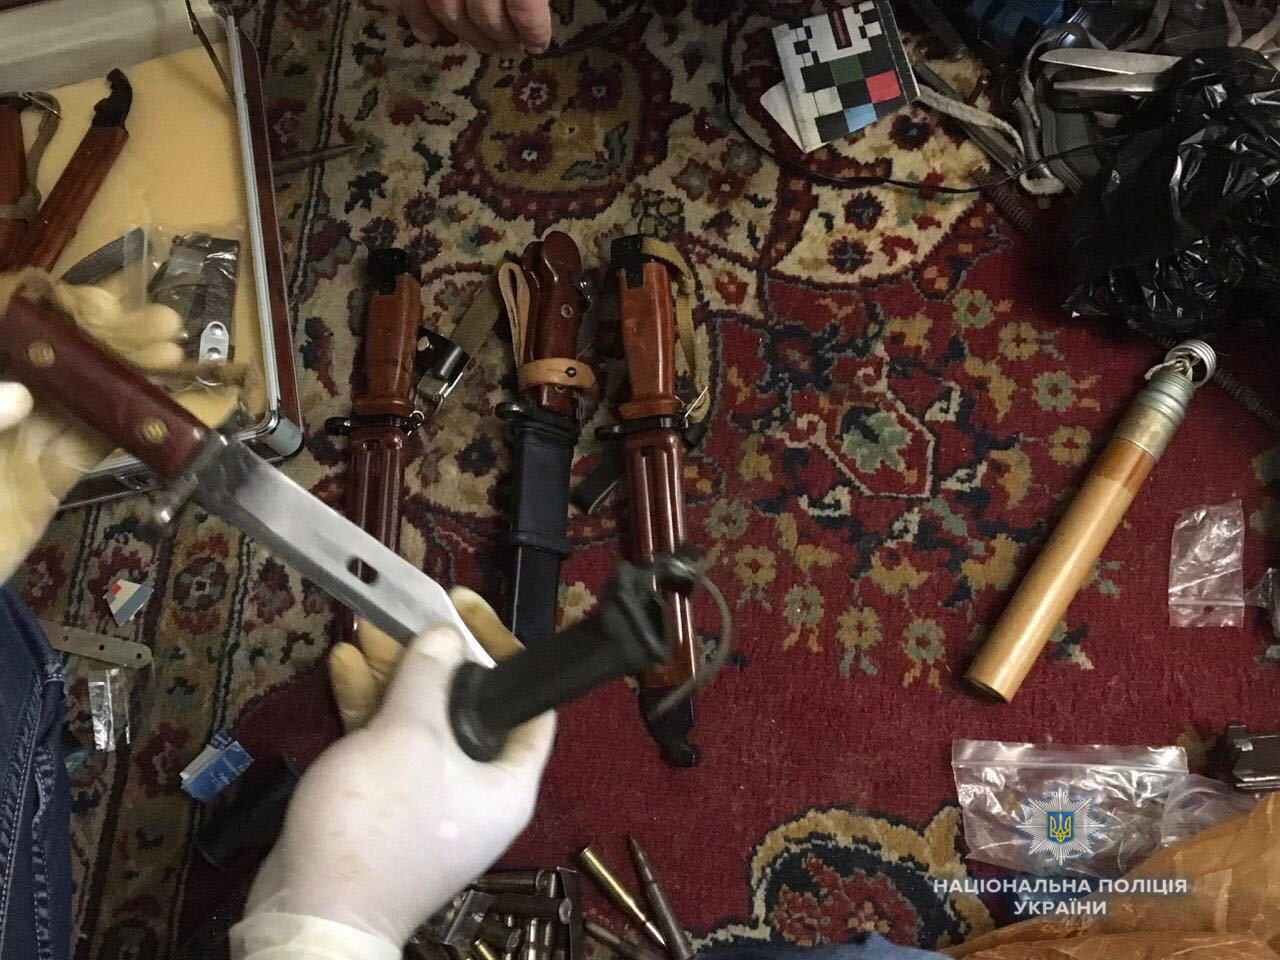 Житель Рівного зберігав арсенал зброї у квартирі (ФОТО, ВІДЕО)